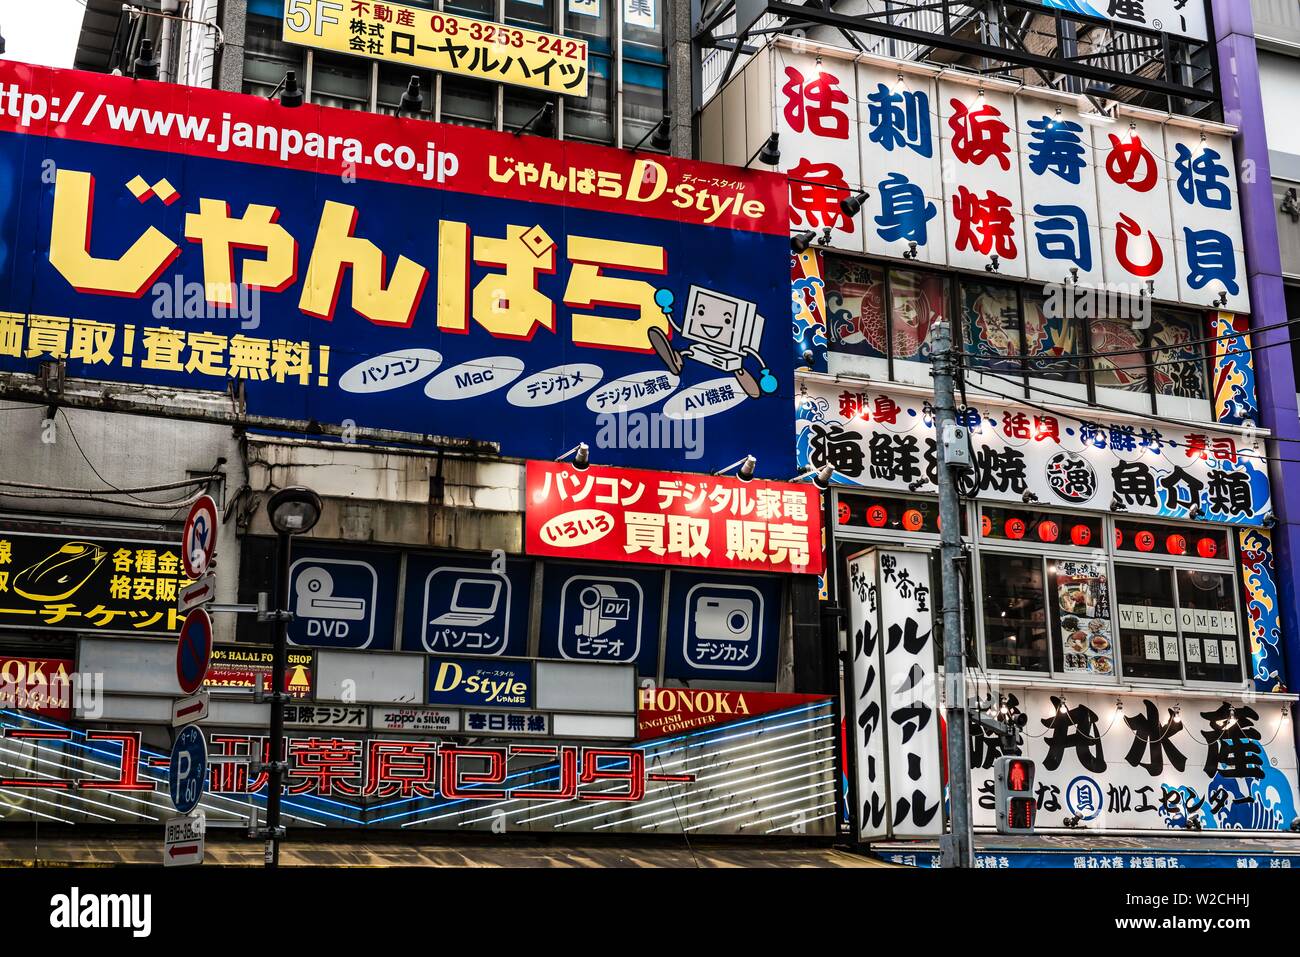 Fassade von einem Elektronikfachgeschäft mit Werbung, japanische Zeichen, Akihabara Electric City, Elektronik 1,6 km, Einkaufszentrum, Tokio, Japan Stockfoto